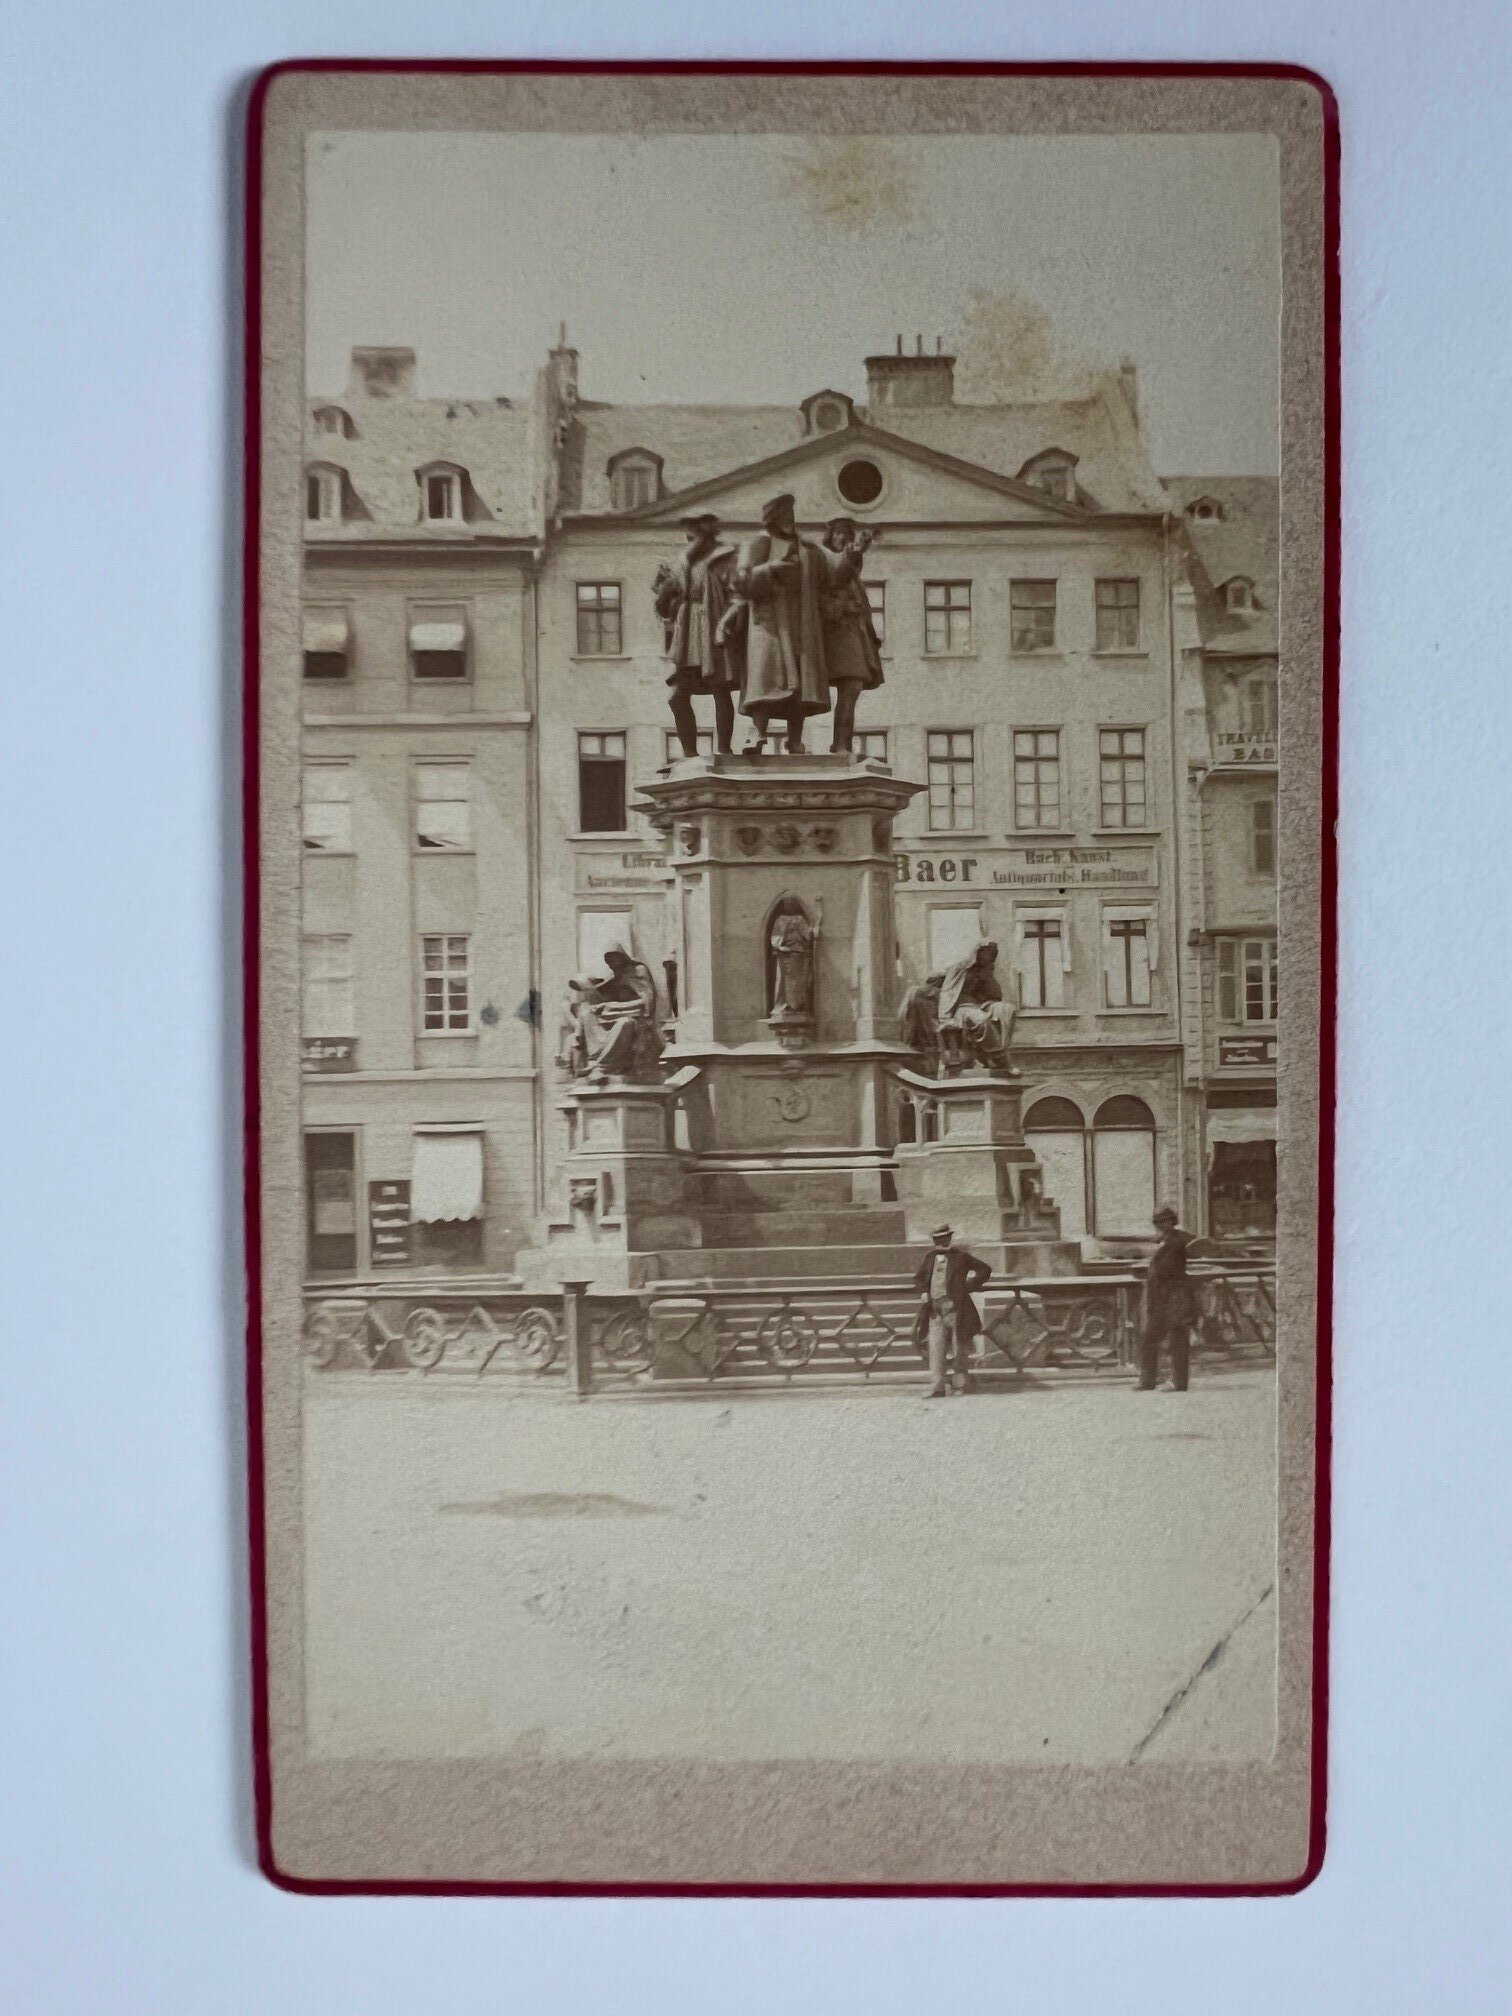 CdV, Unbekannter Fotograf, Frankfurt, Guttenberg-Denkmal, ca. 1880. (Taunus-Rhein-Main - Regionalgeschichtliche Sammlung Dr. Stefan Naas CC BY-NC-SA)